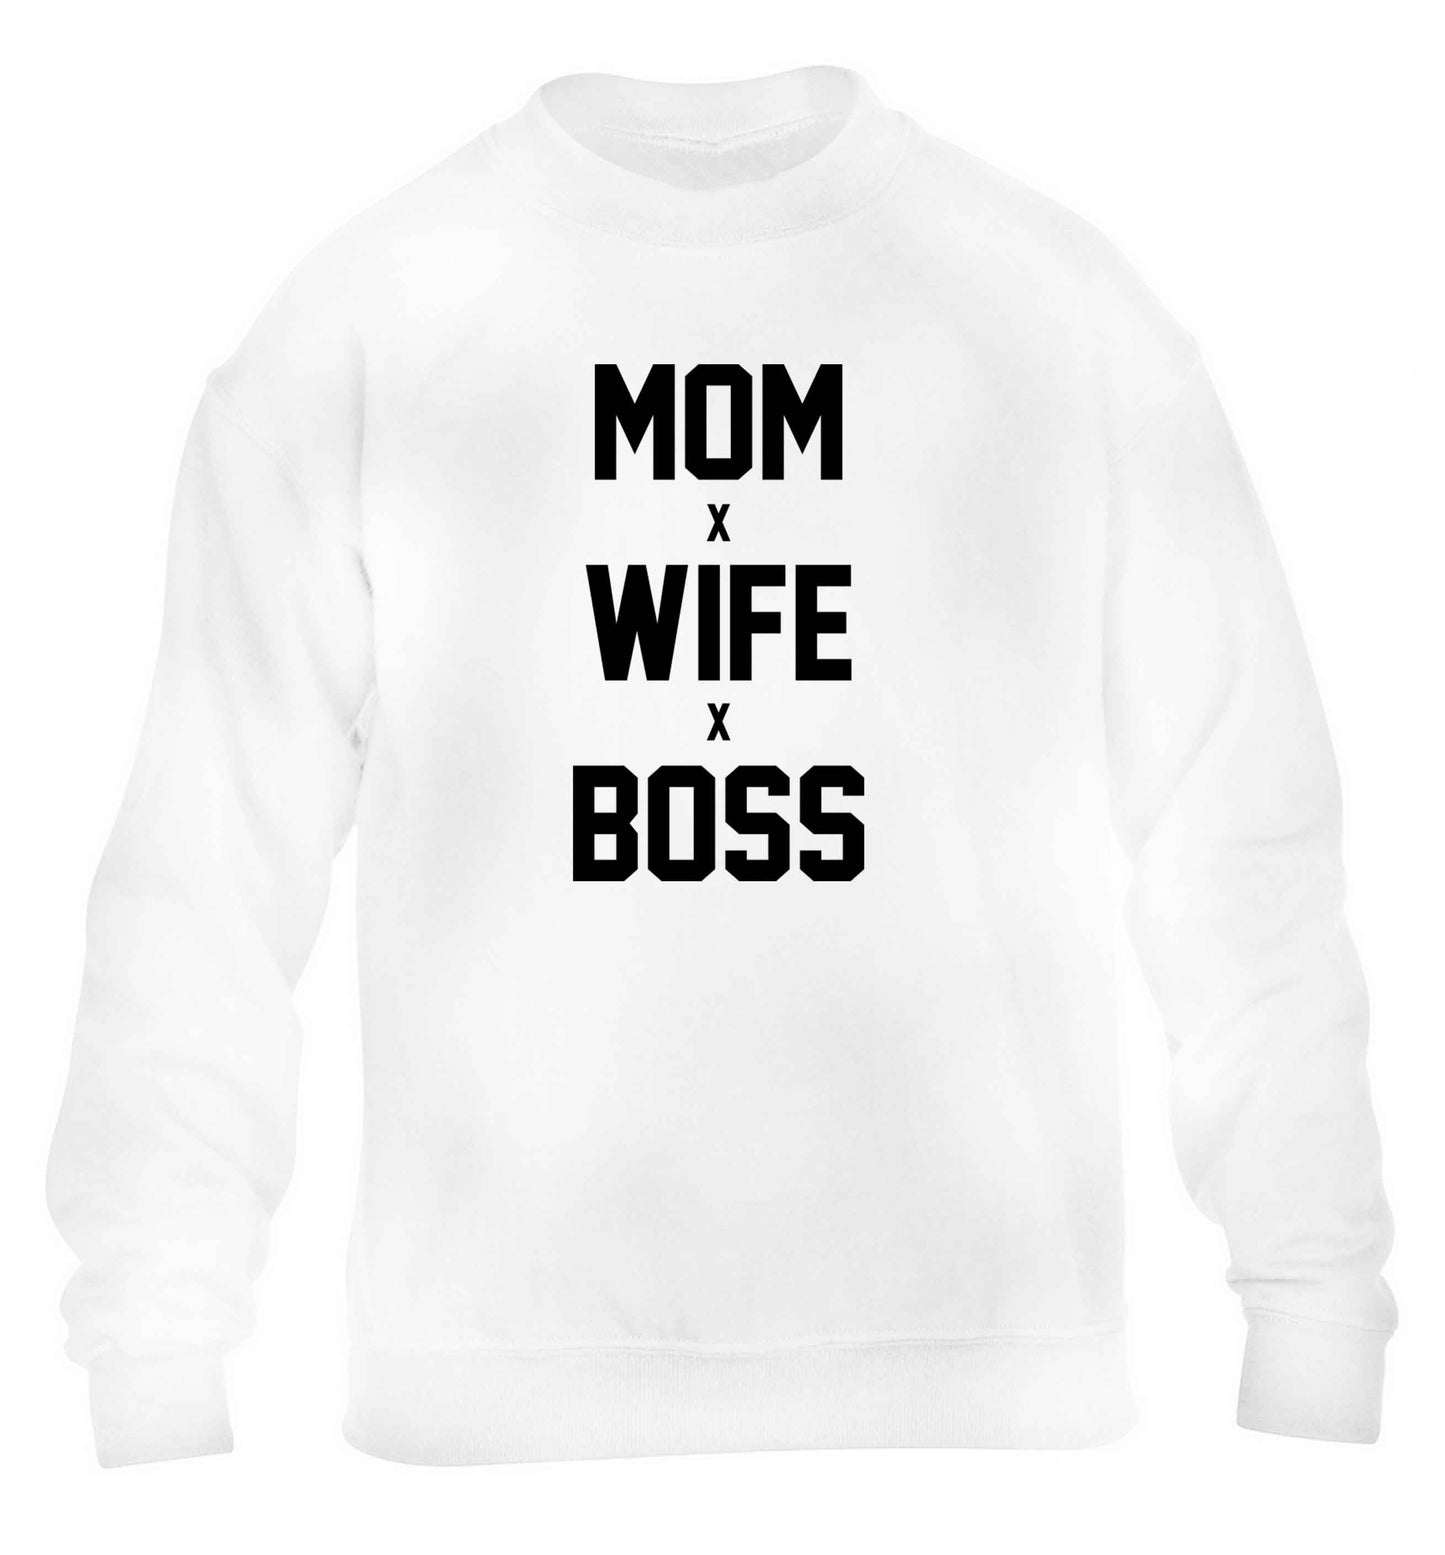 Mum wife boss children's white sweater 12-13 Years